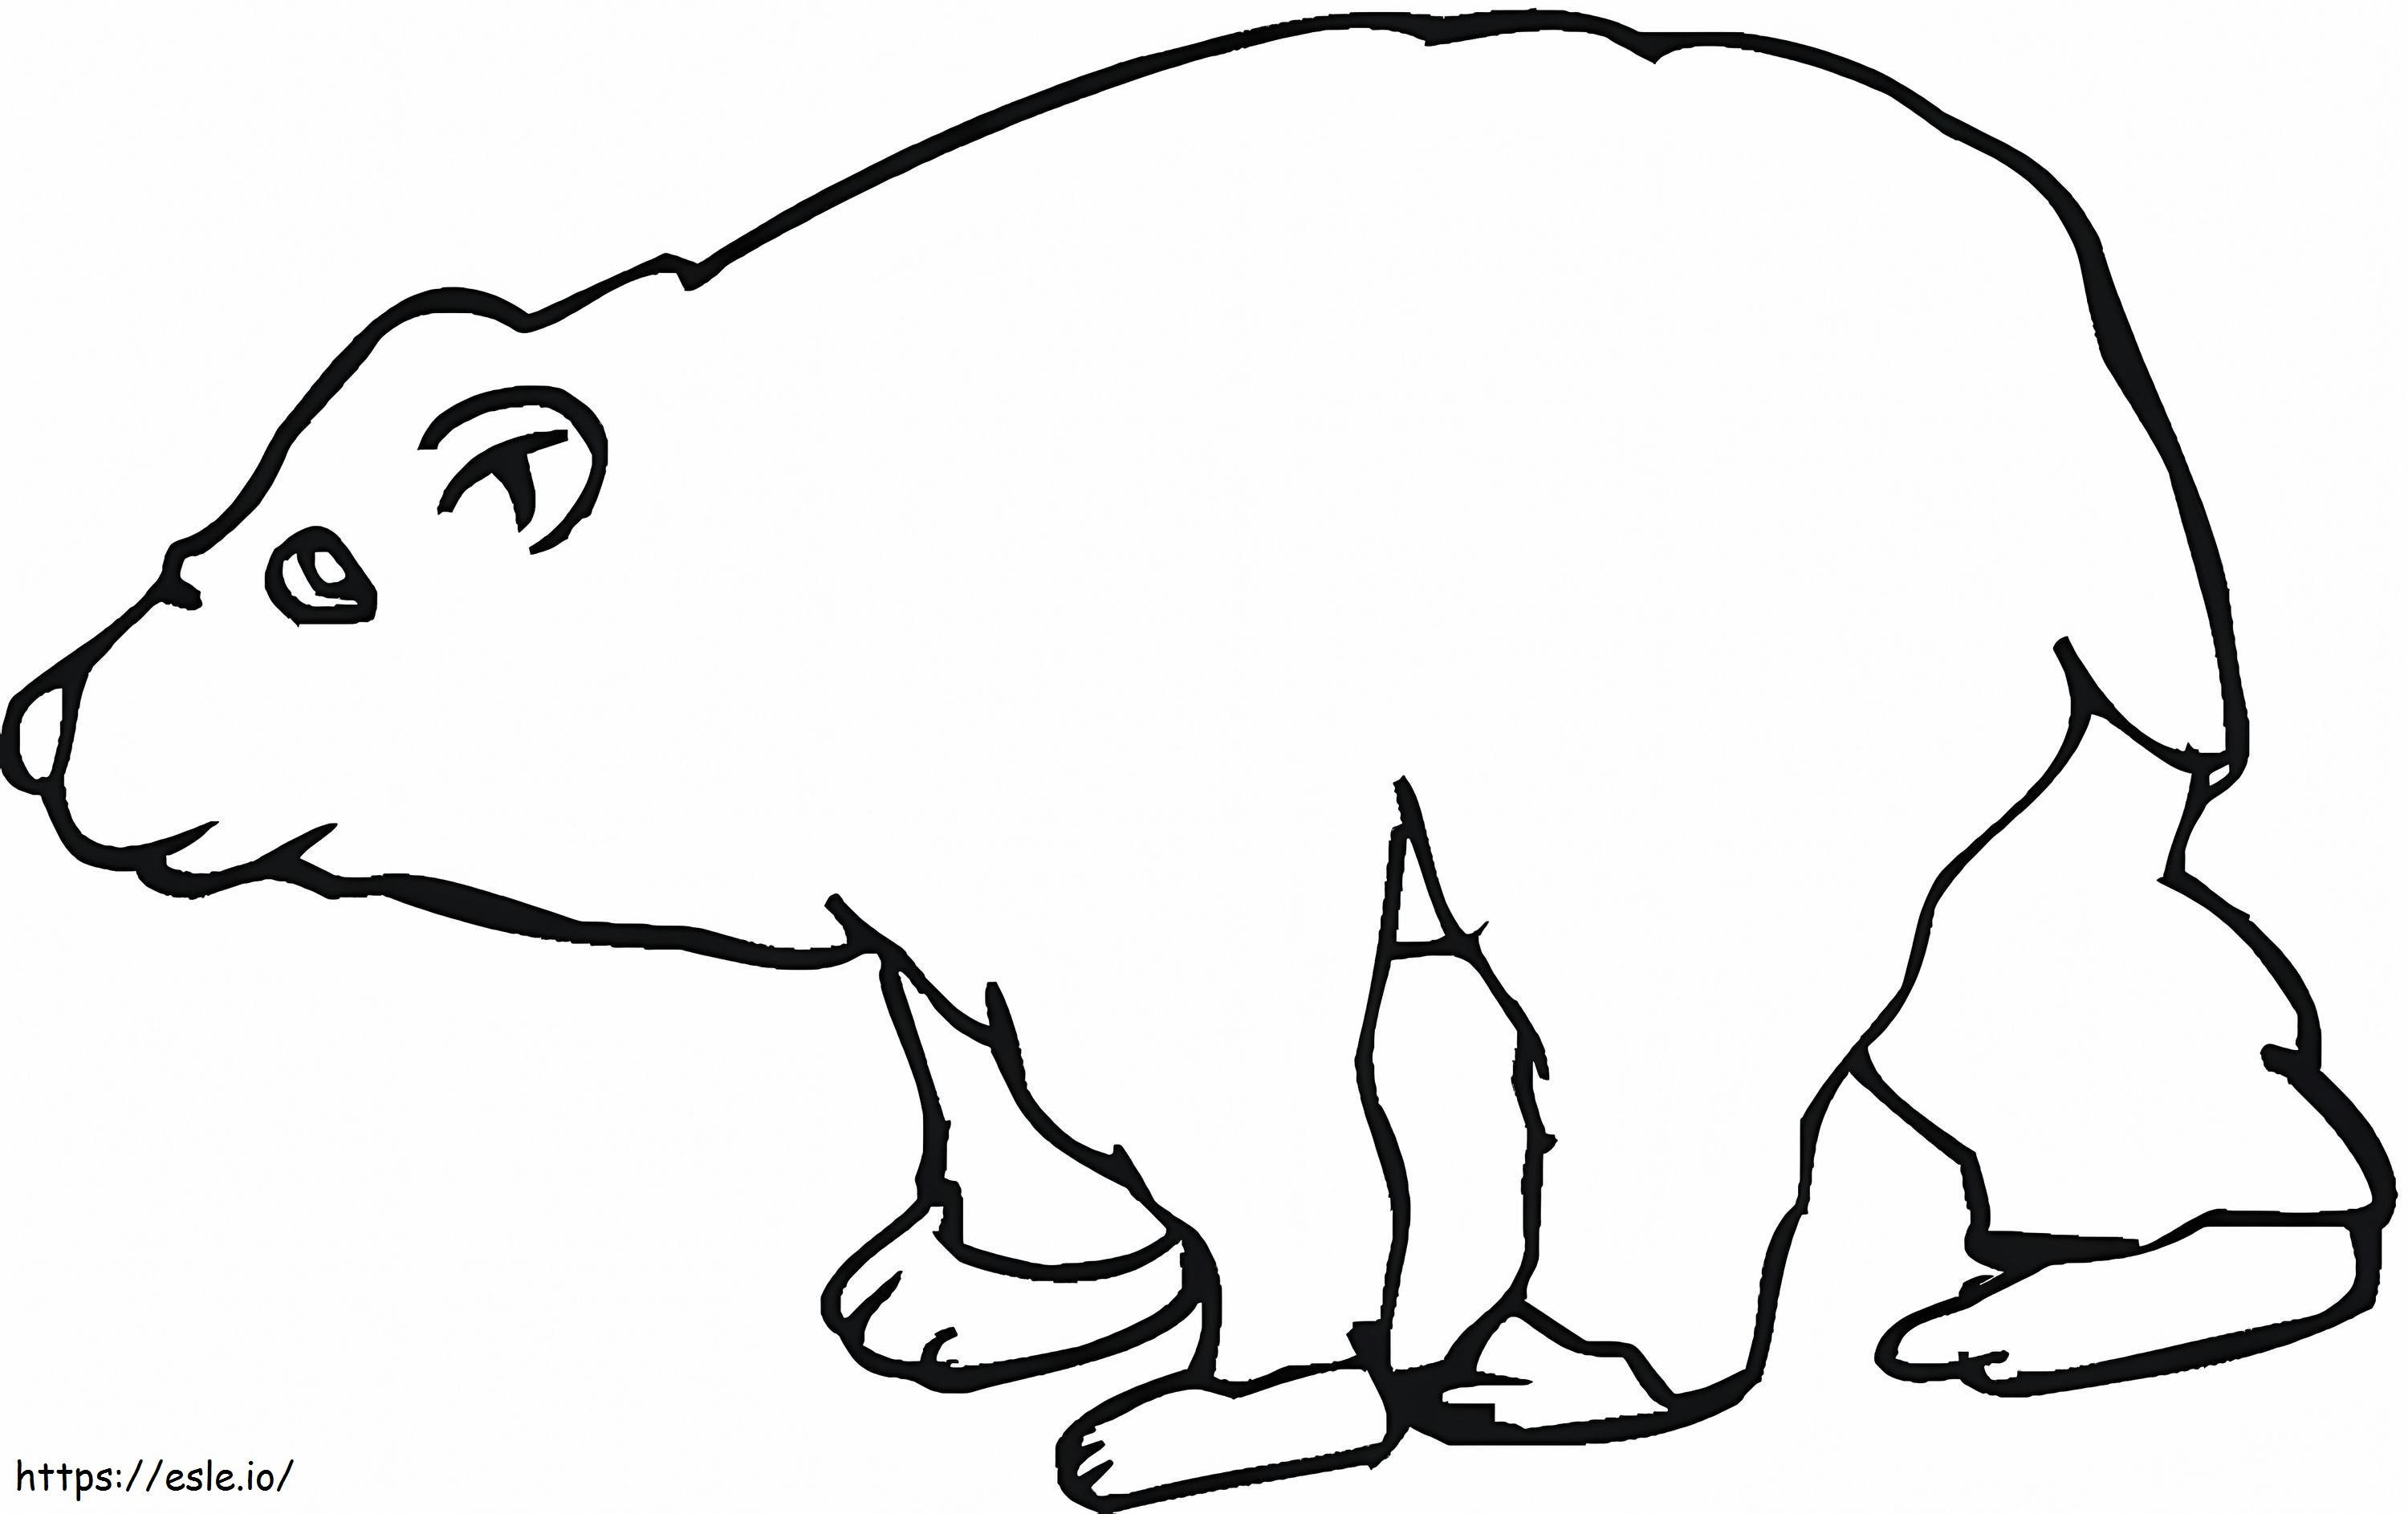 Niedźwiedź brunatny 5 kolorowanka